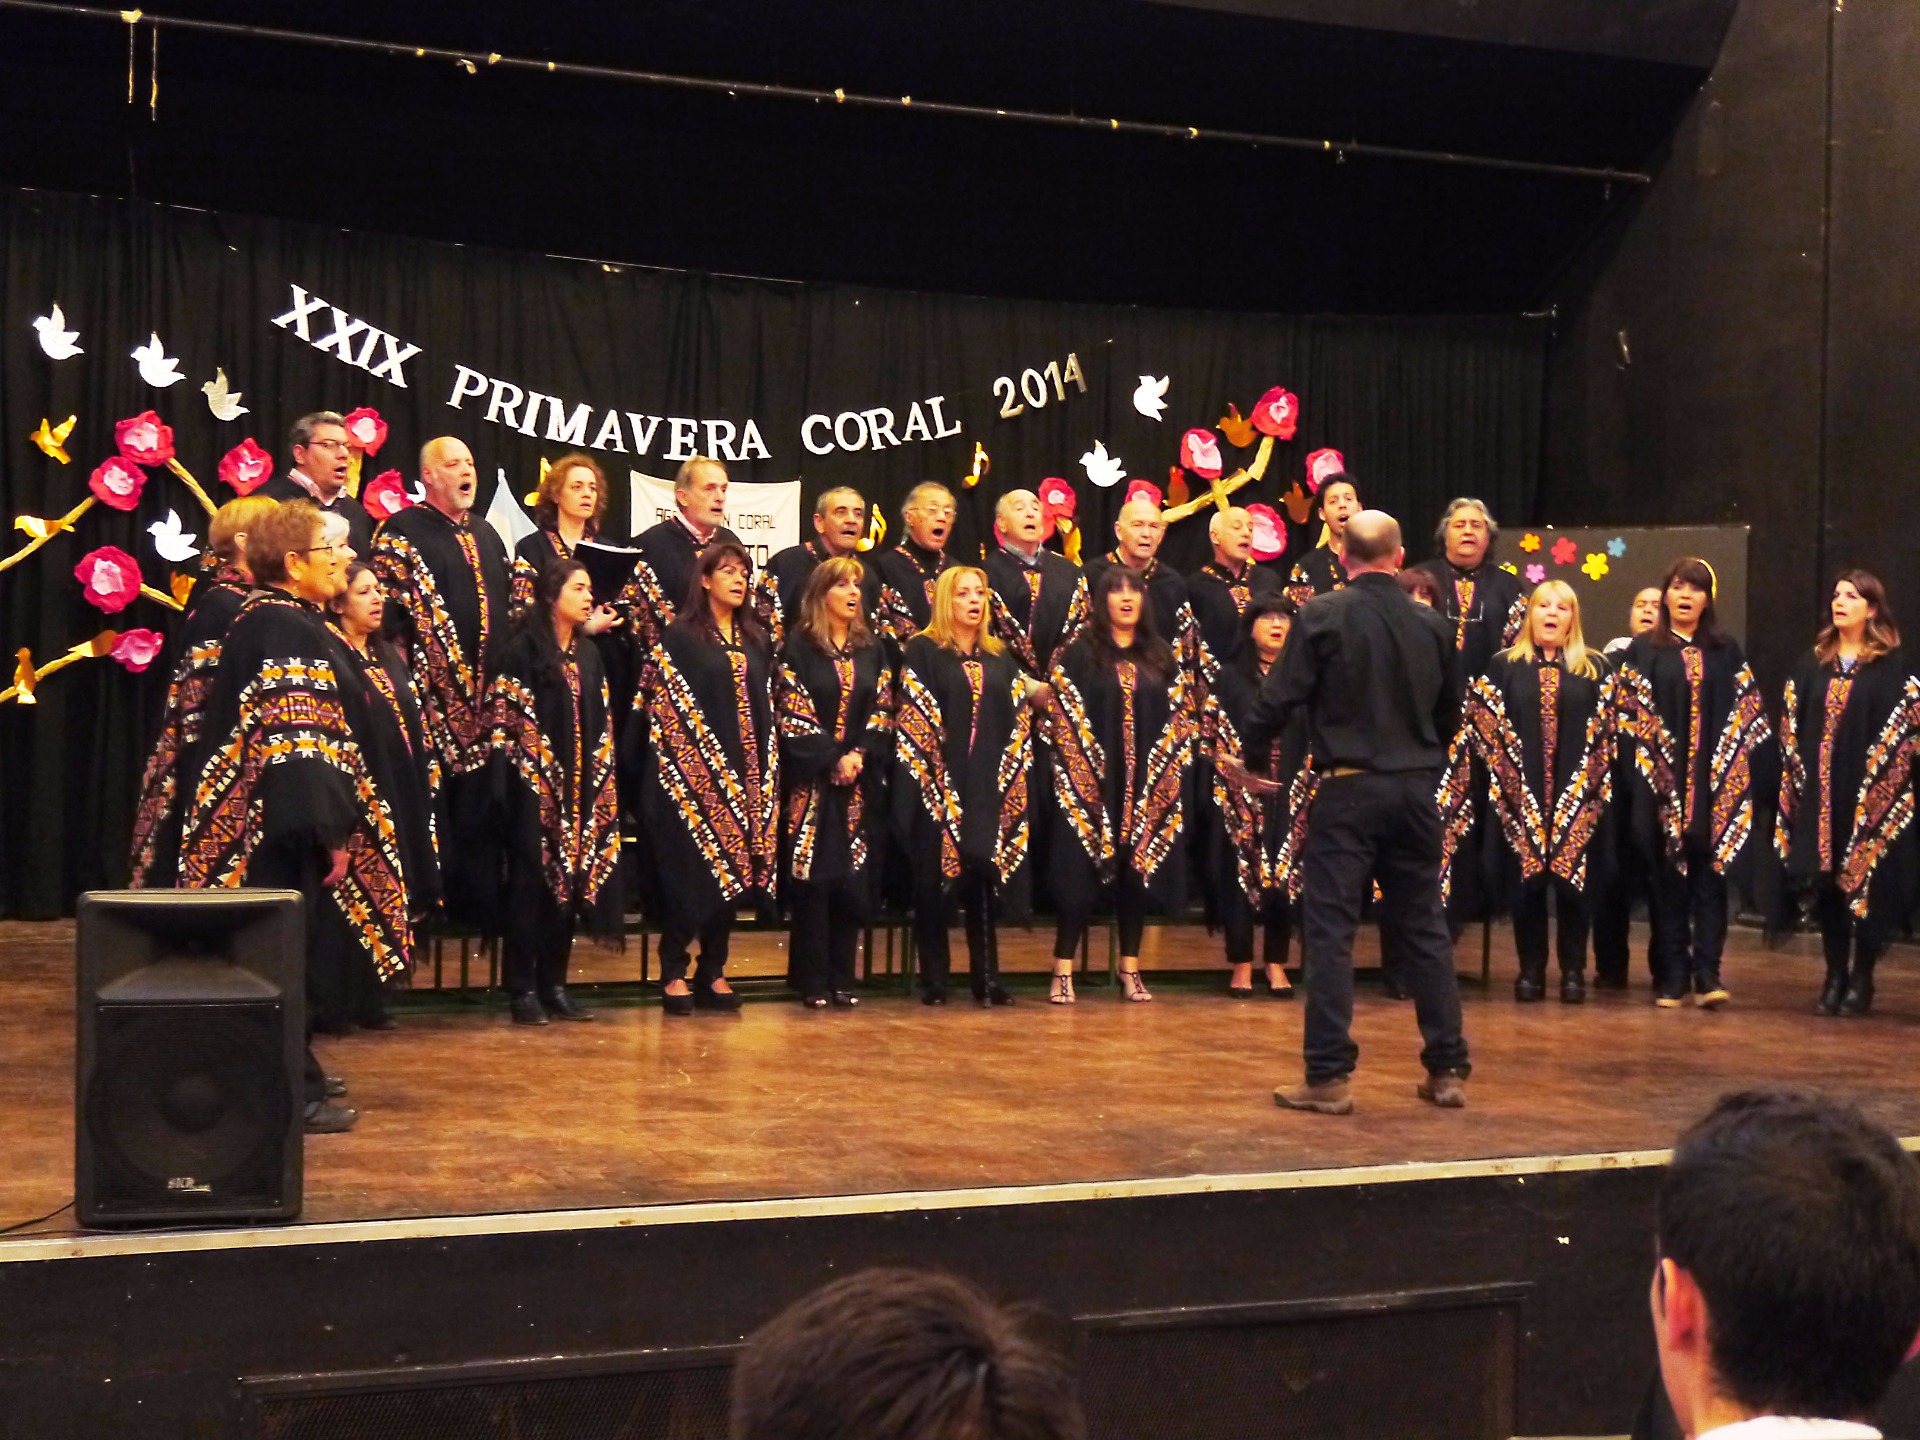 Llega la “Primavera Coral” a Carlos Paz con más de 200 coristas del país y de Uruguay